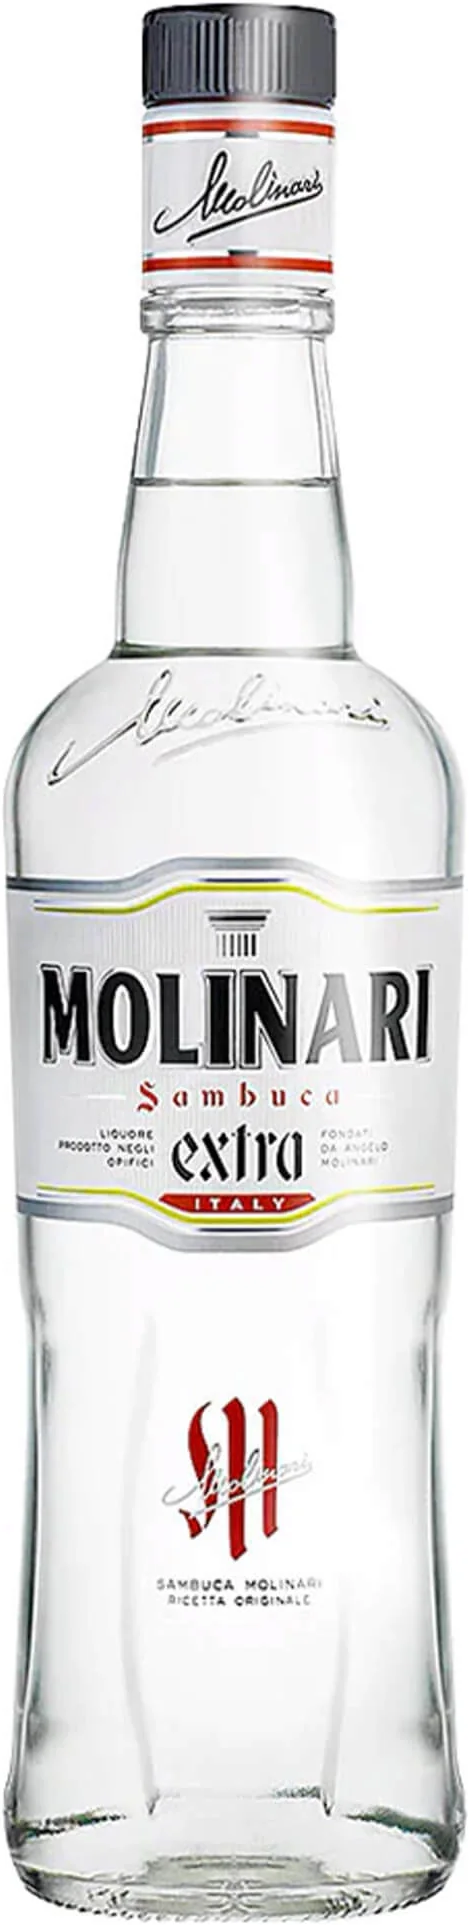 Molinari Extra Sambuca 700ml